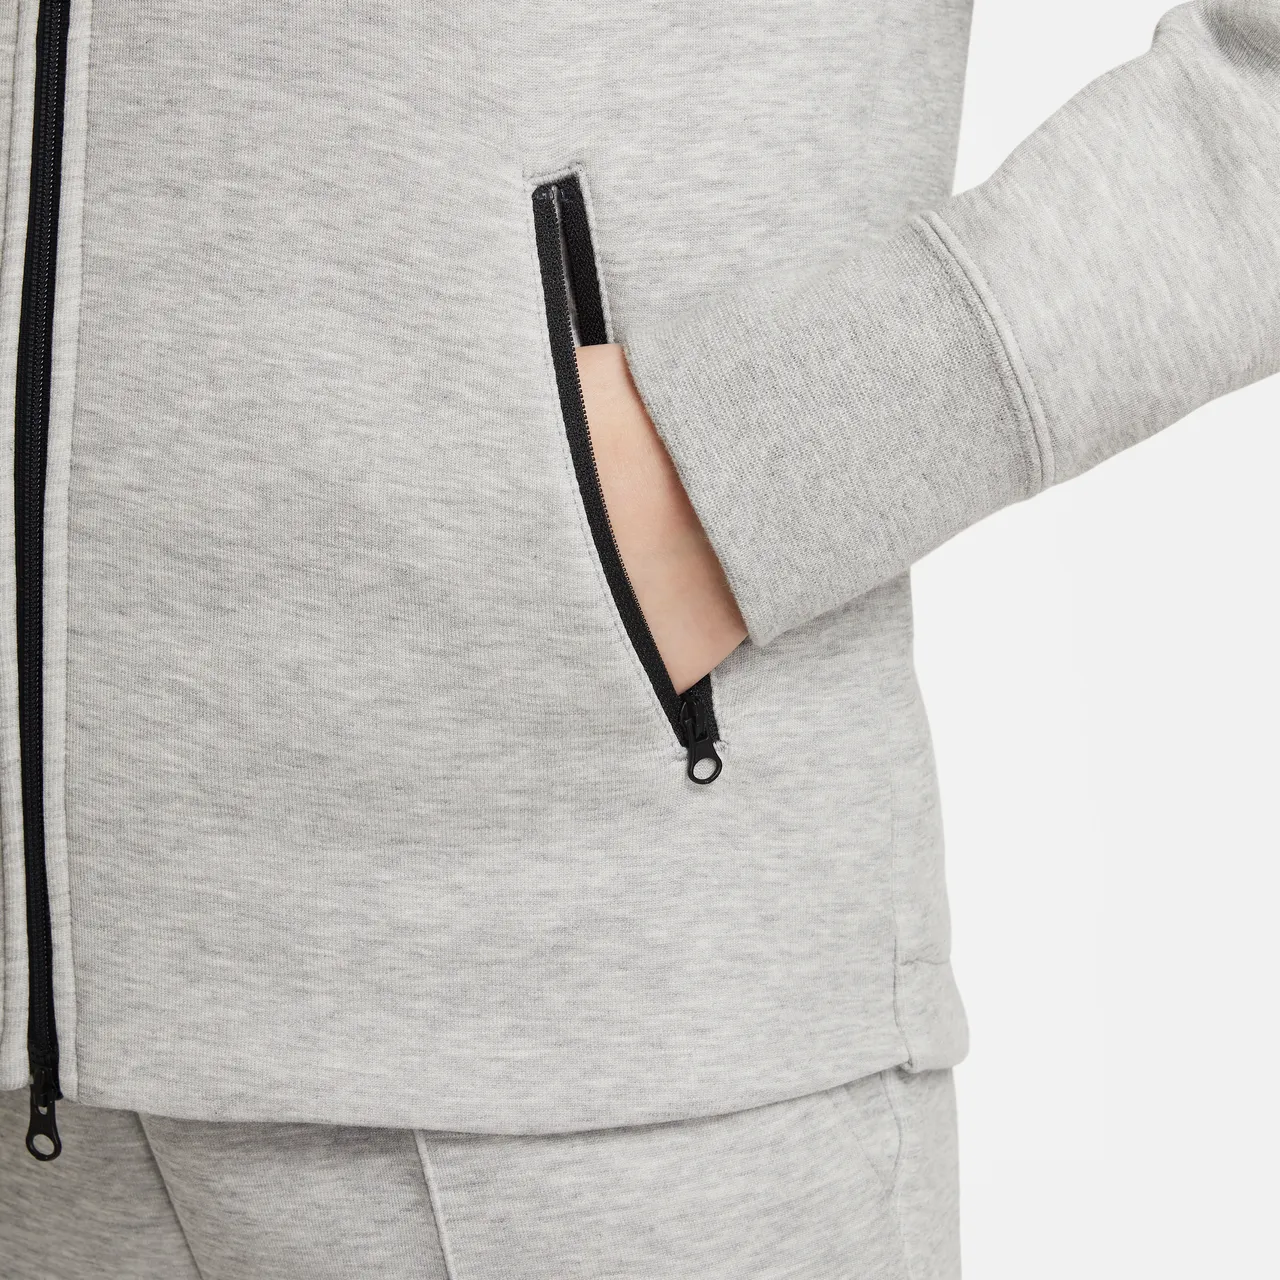 Nike Sportswear Tech Fleece Hoodie mit durchgehendem Reißverschluss für ältere Kinder (Mädchen) - Grau